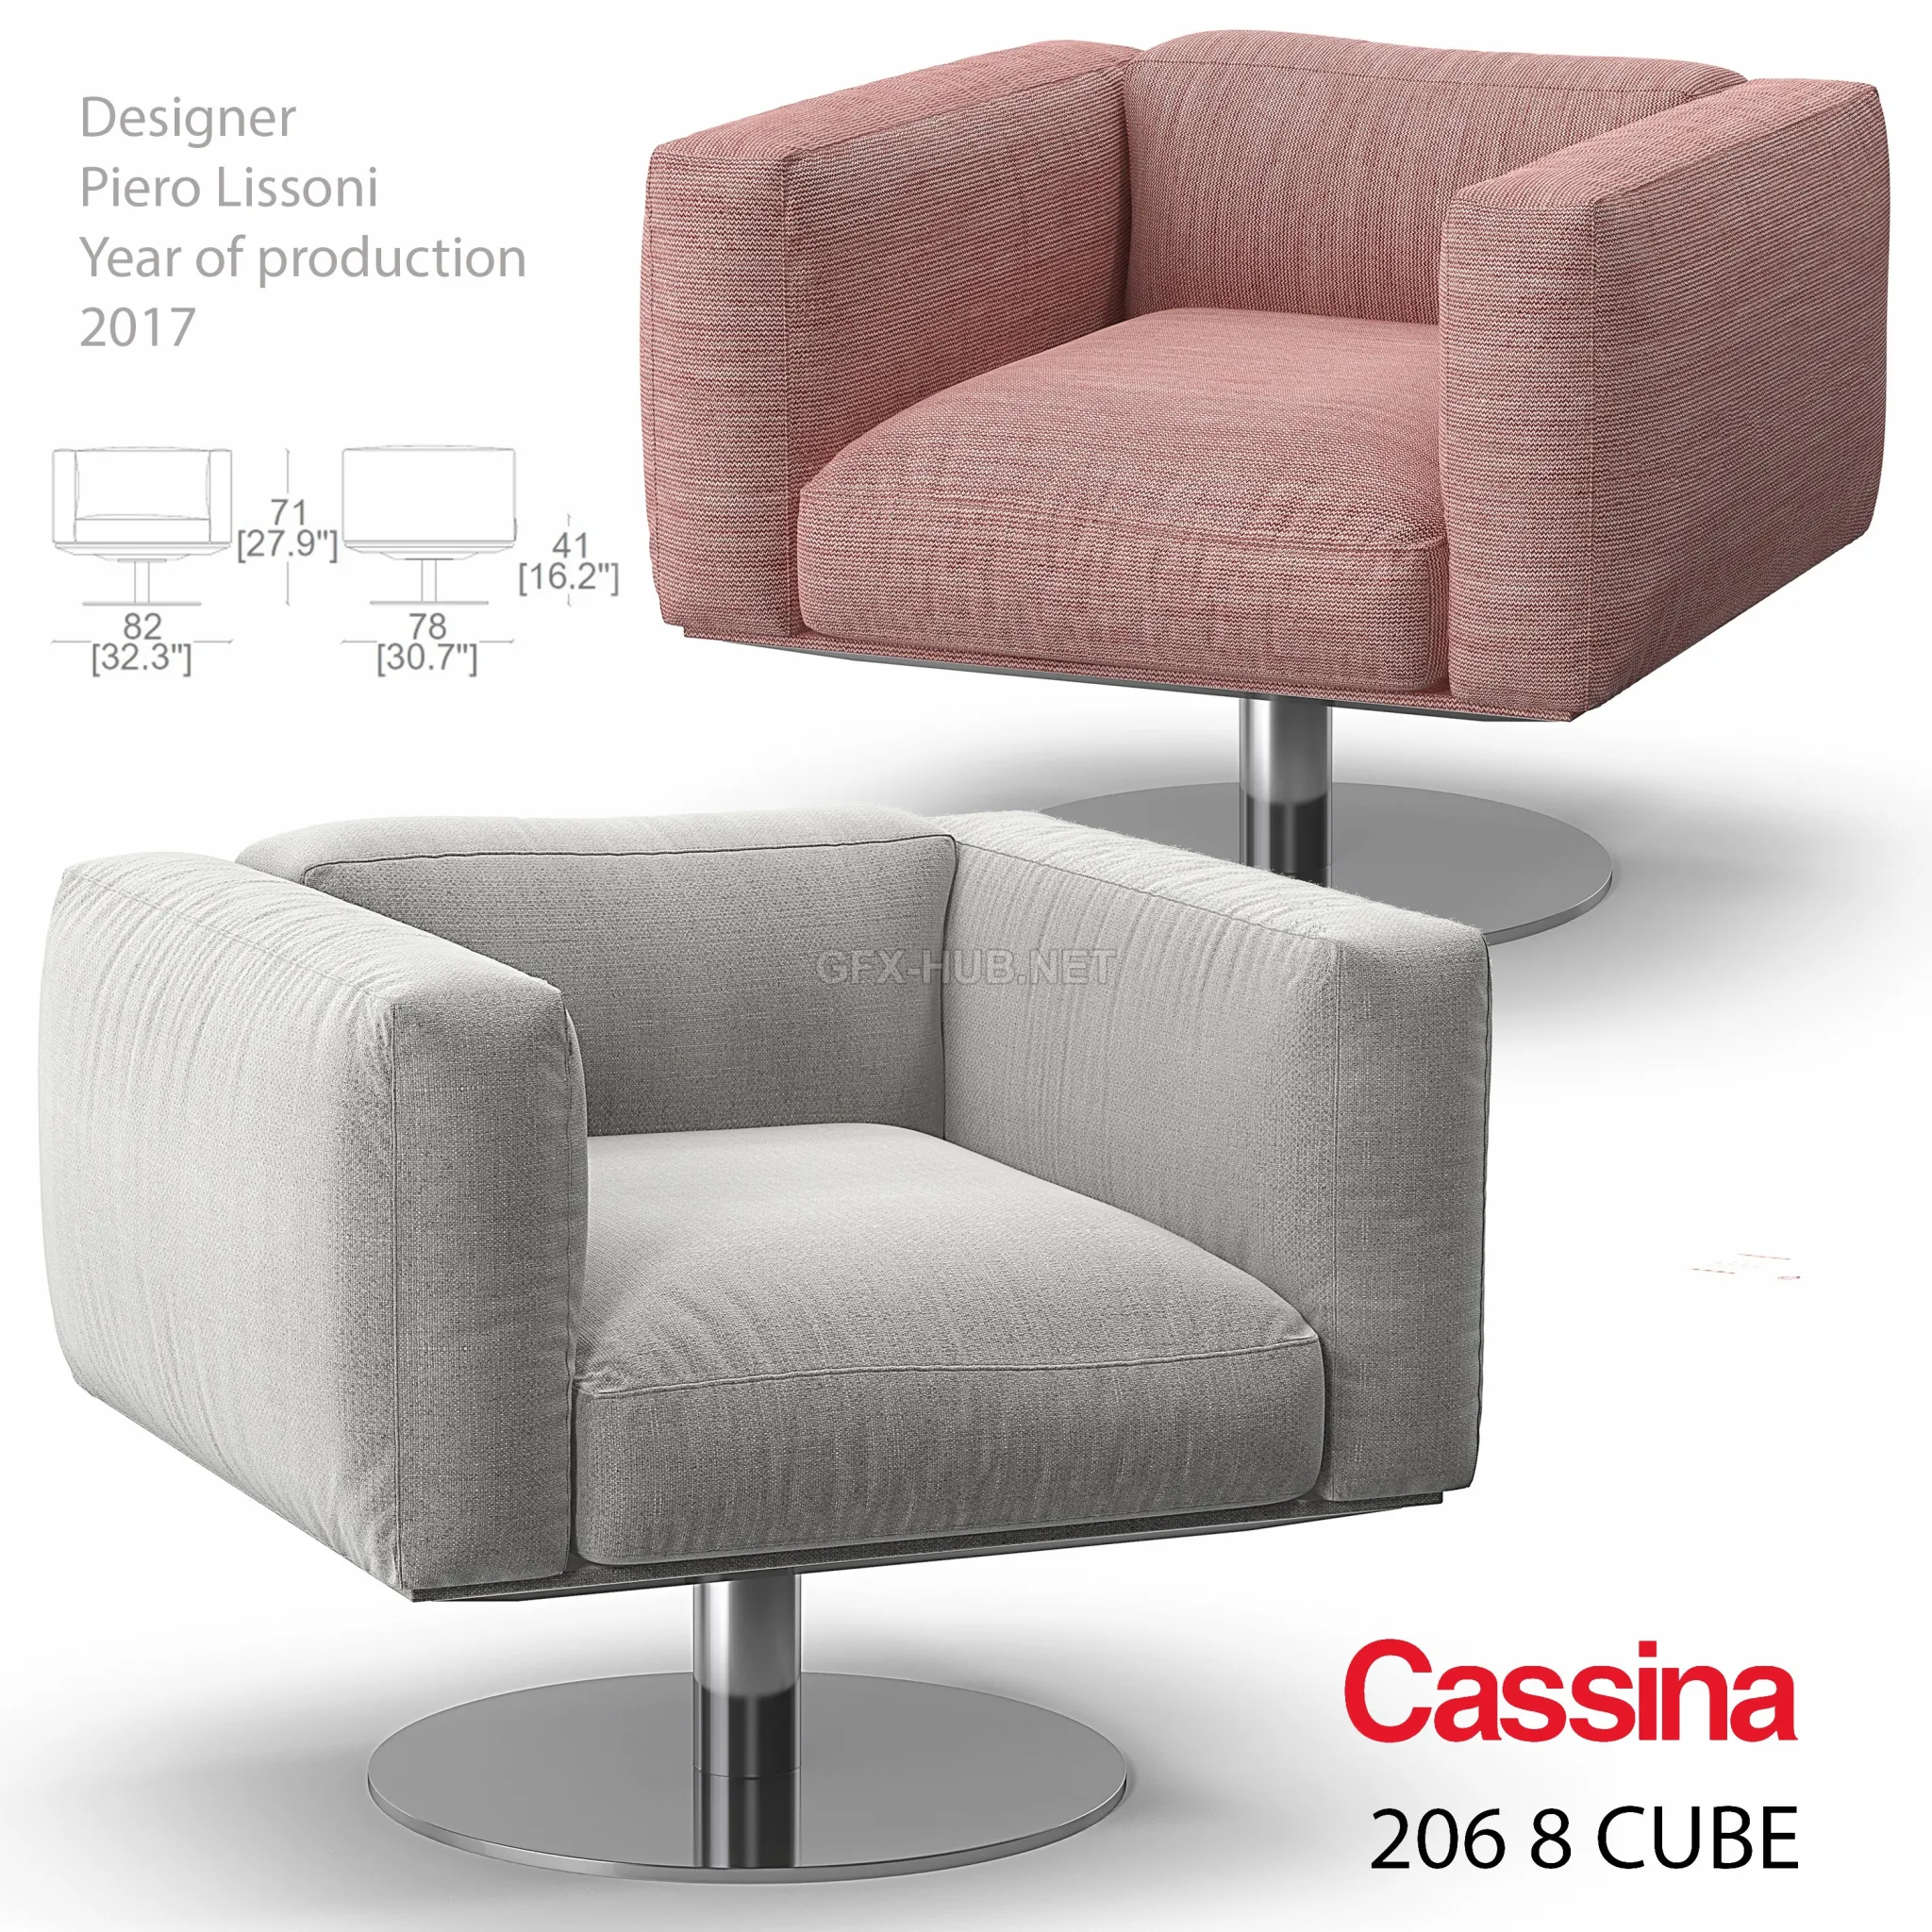 Cassina 206 8 Cube armchair – 209639